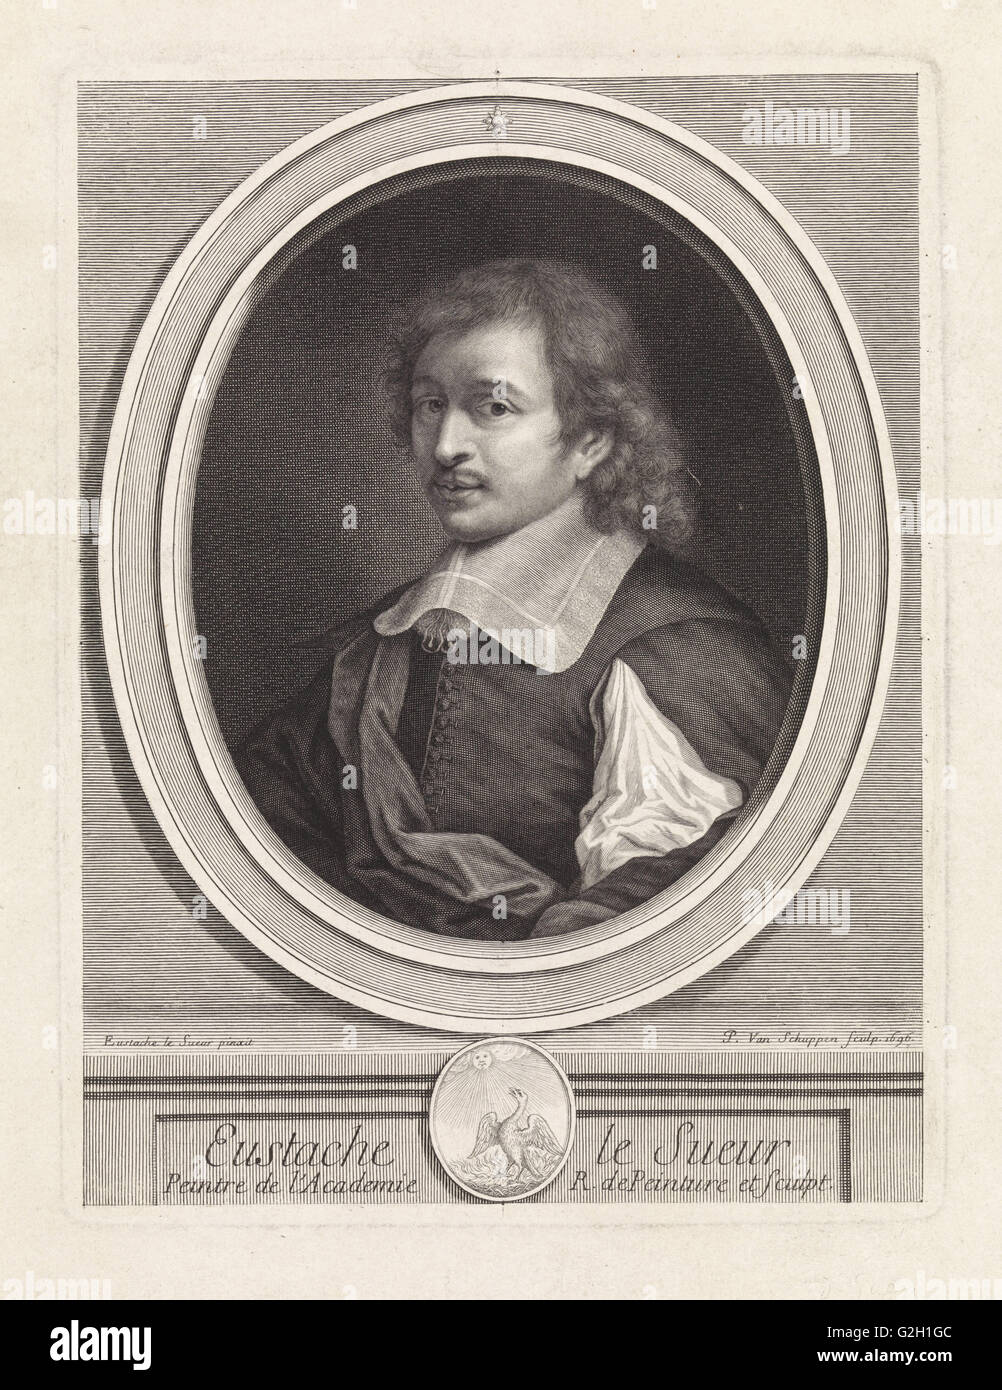 Portrait of the painter Eustache Lesueur, after his self-portrait, Pieter van Schuppen, 1696 Stock Photo